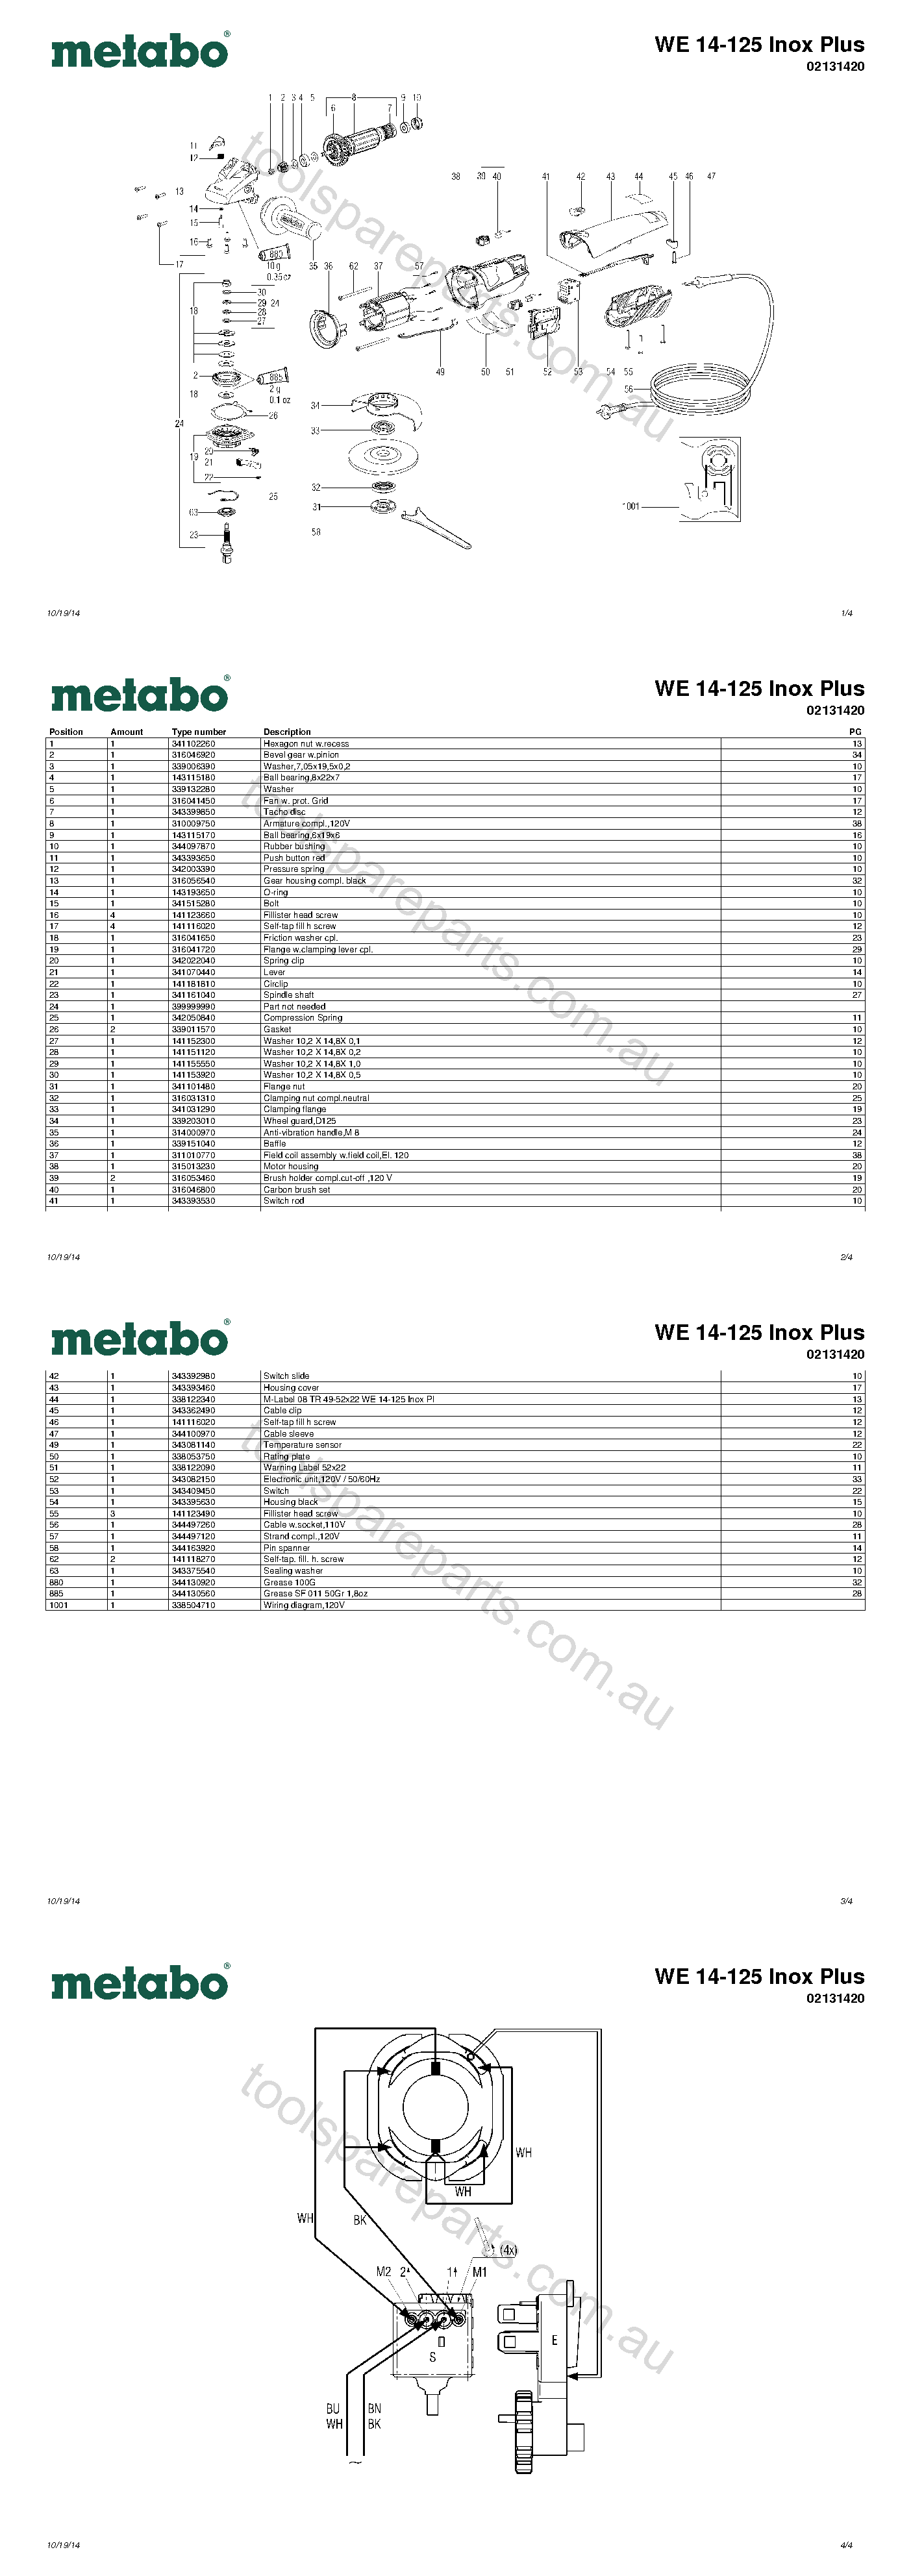 Metabo WE 14-125 Inox Plus 02131420  Diagram 1